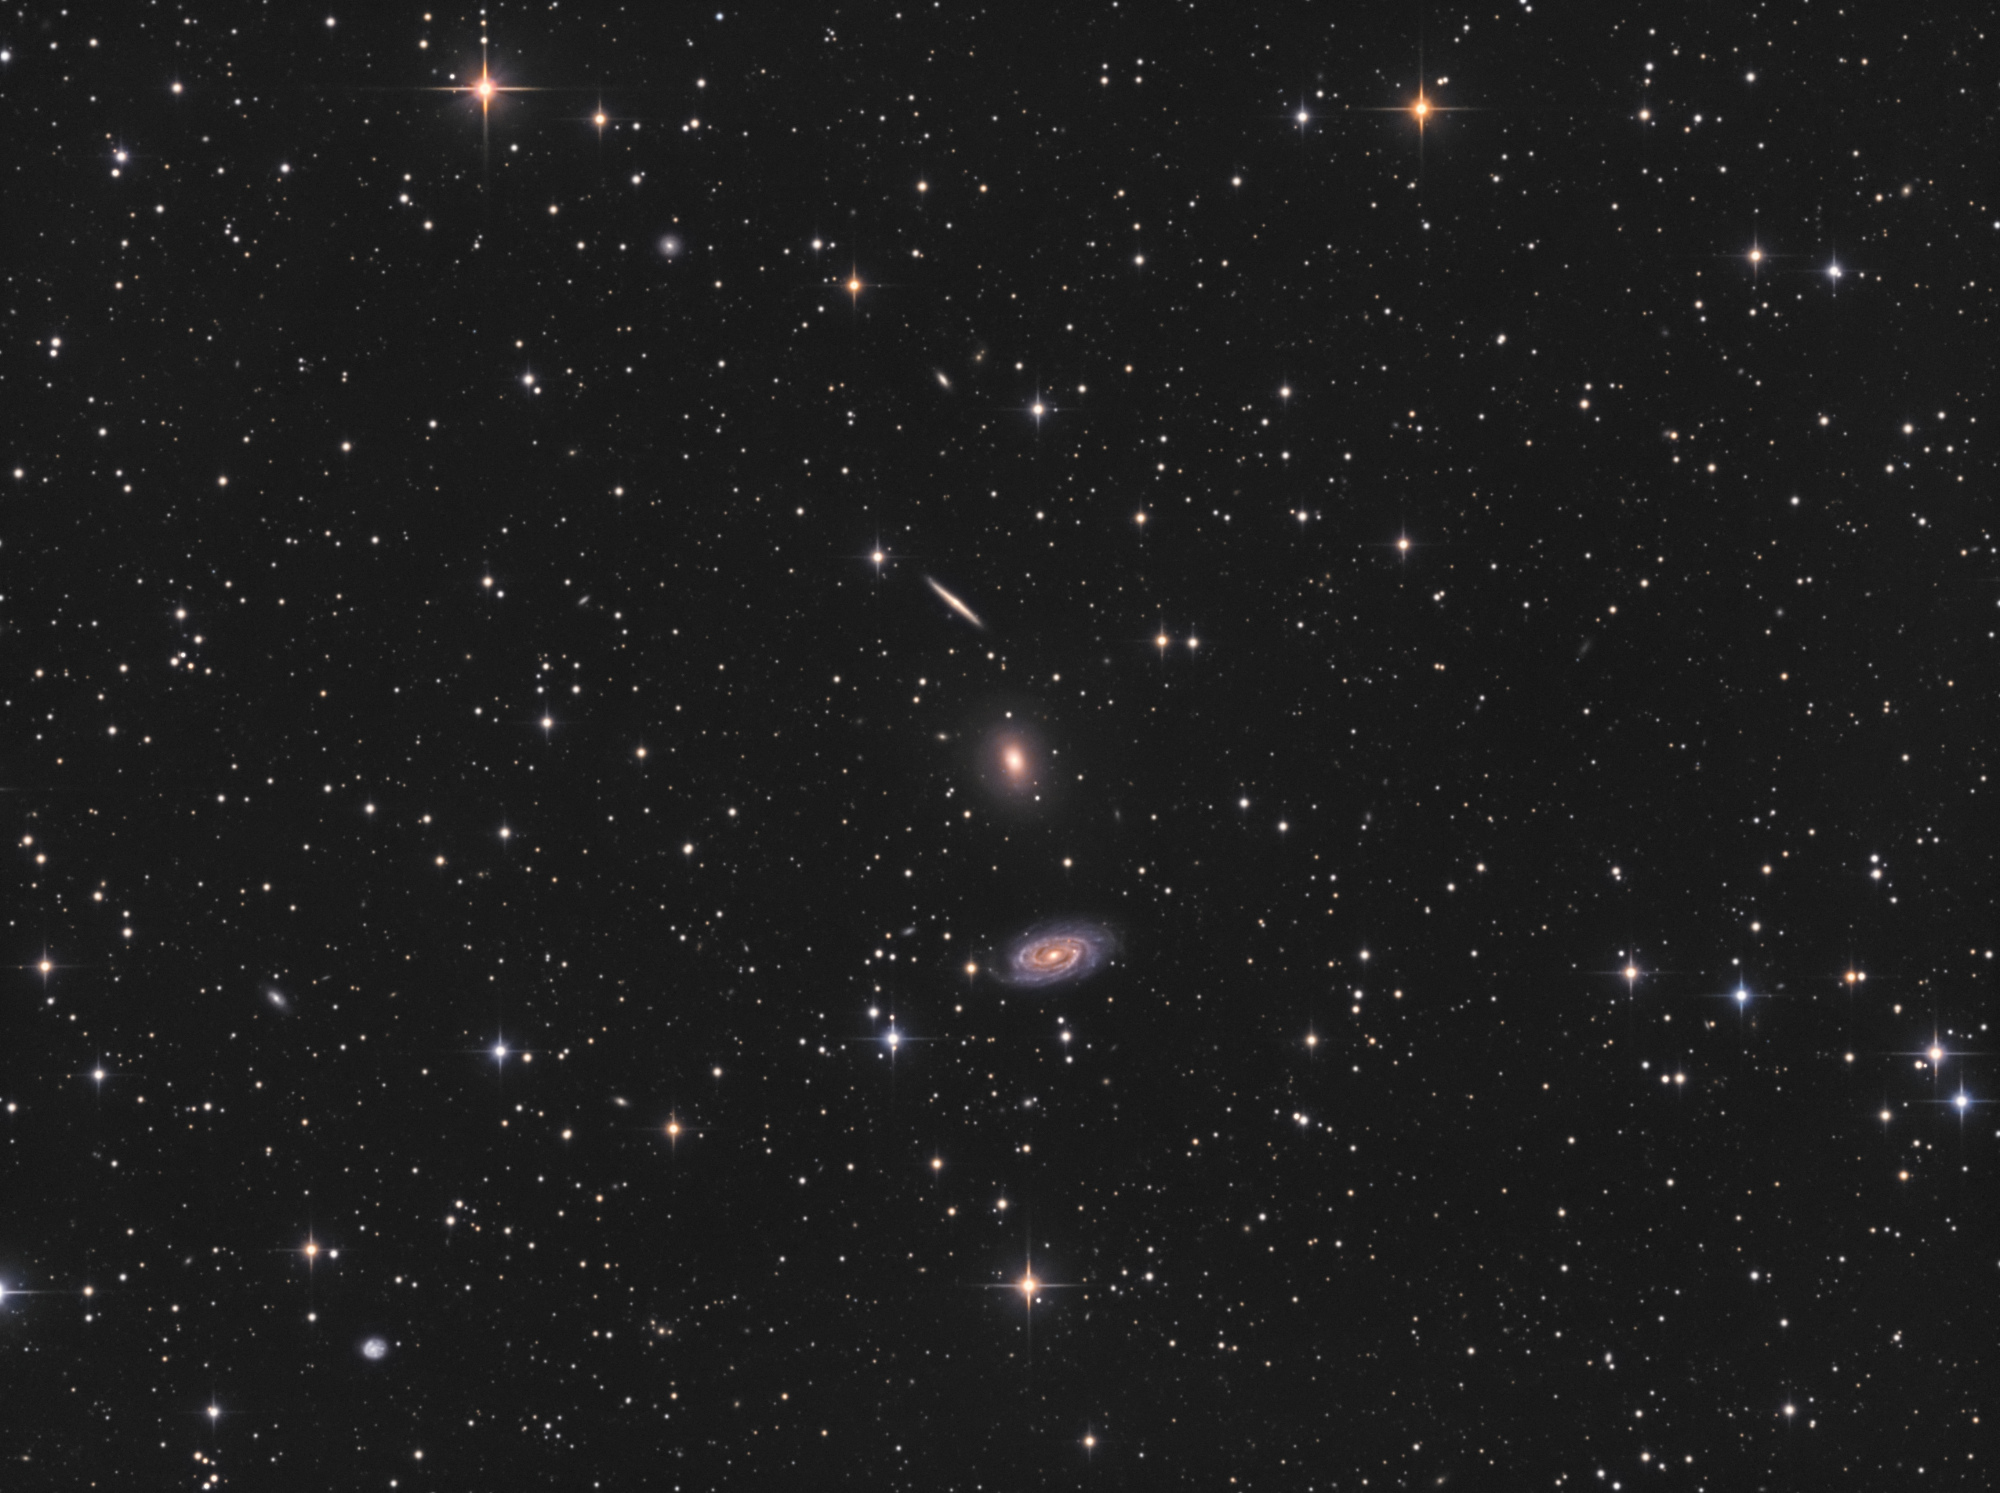 5b2c6f369d02a_NGC5985.thumb.jpg.e25111b16bcc1a58d1e488c85b15dac2.jpg